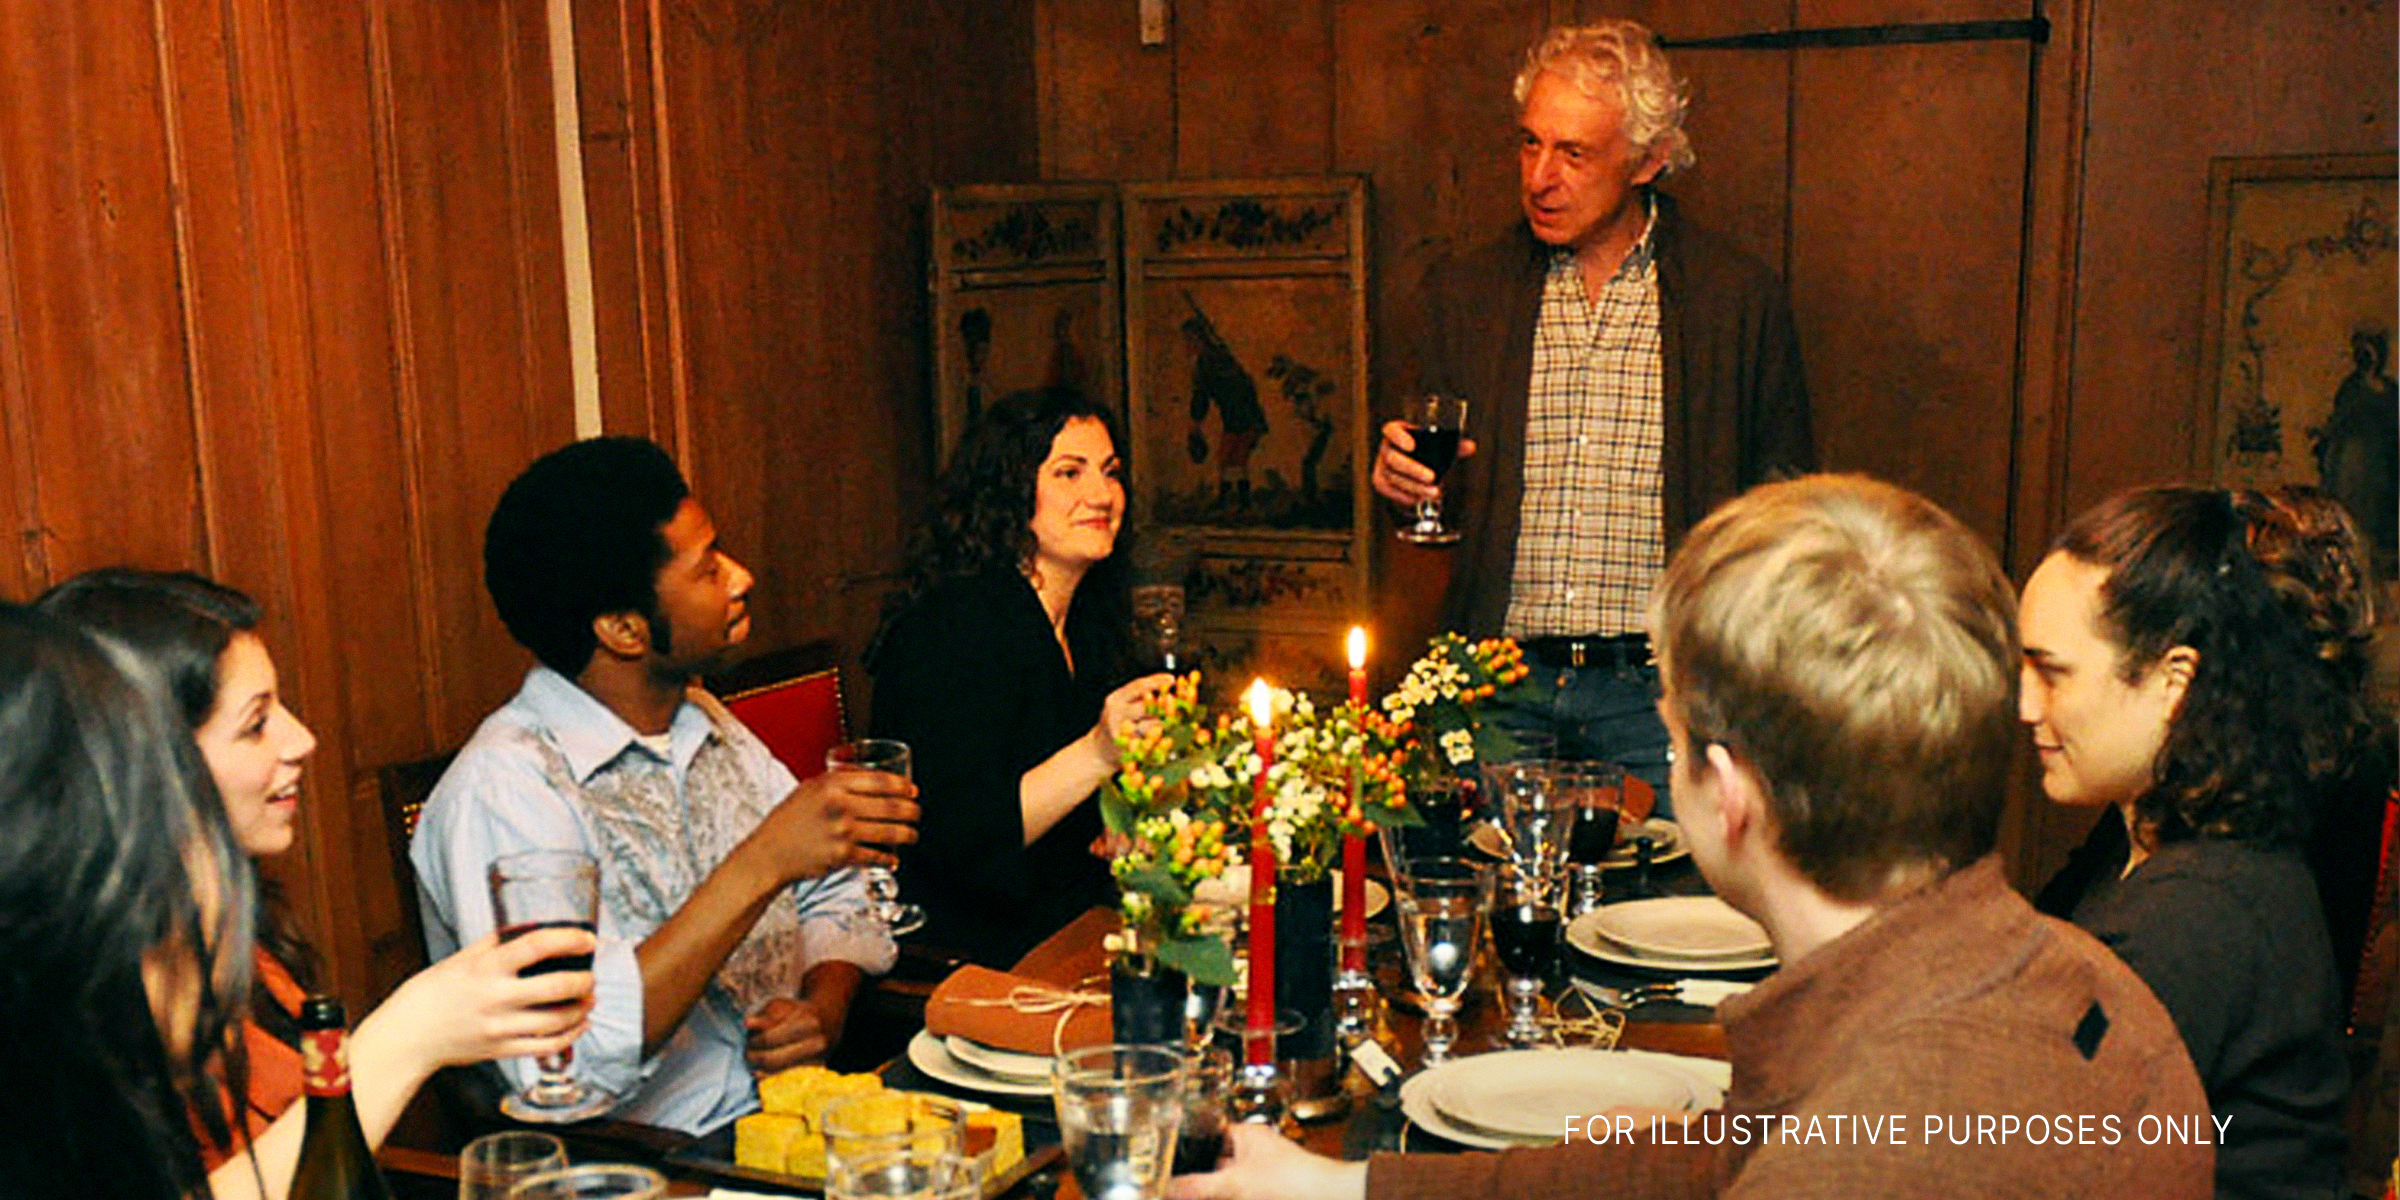 Eine Familie beim Abendessen | Quelle: Shutterstock